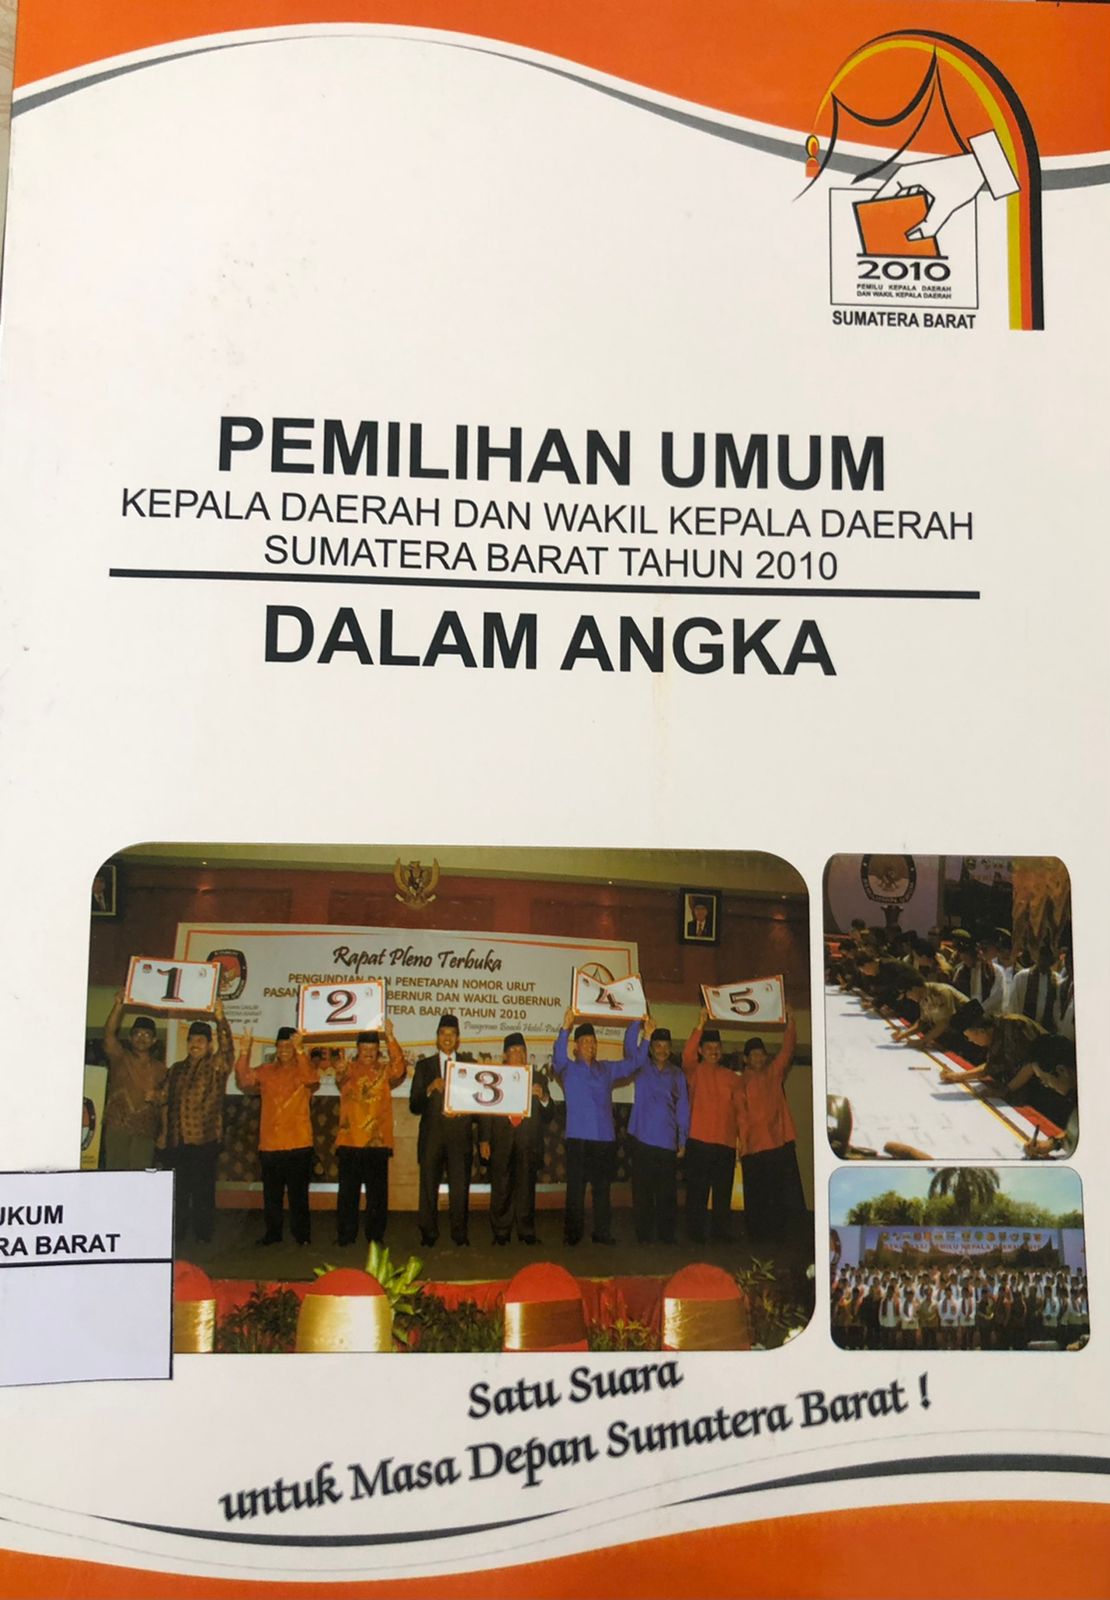 Pemilihan Umum Kepala daerah Dan Wakil Kepala Daerah Sumatera Barat Tahun 2010 Dalam Angka